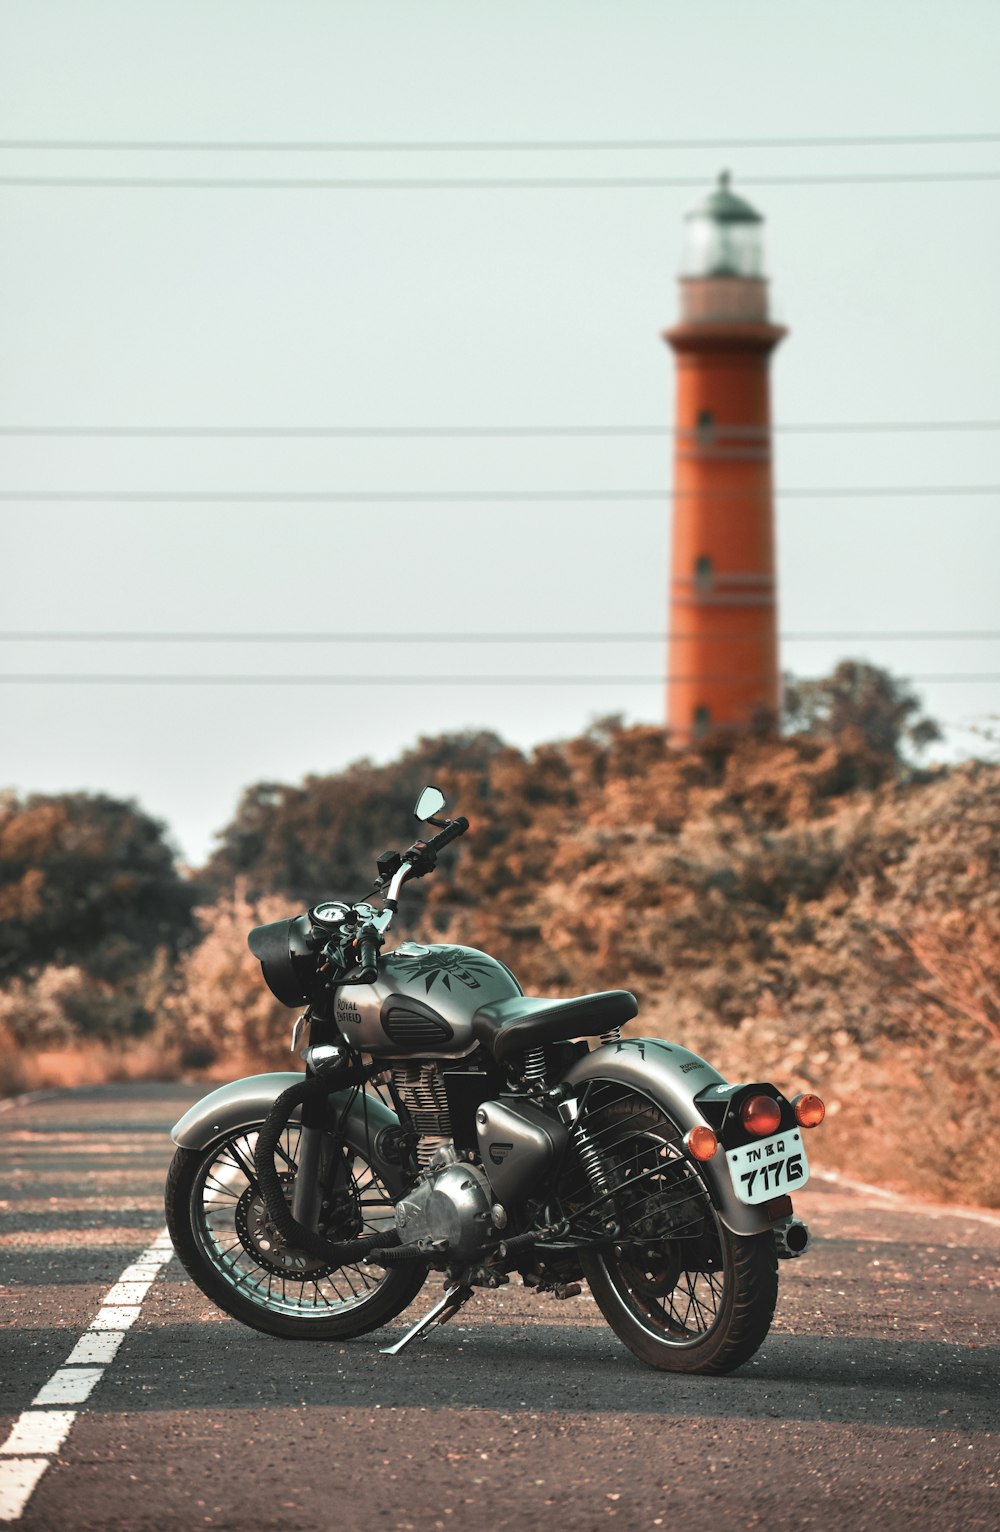 motocicleta preta estacionada no campo marrom durante o dia